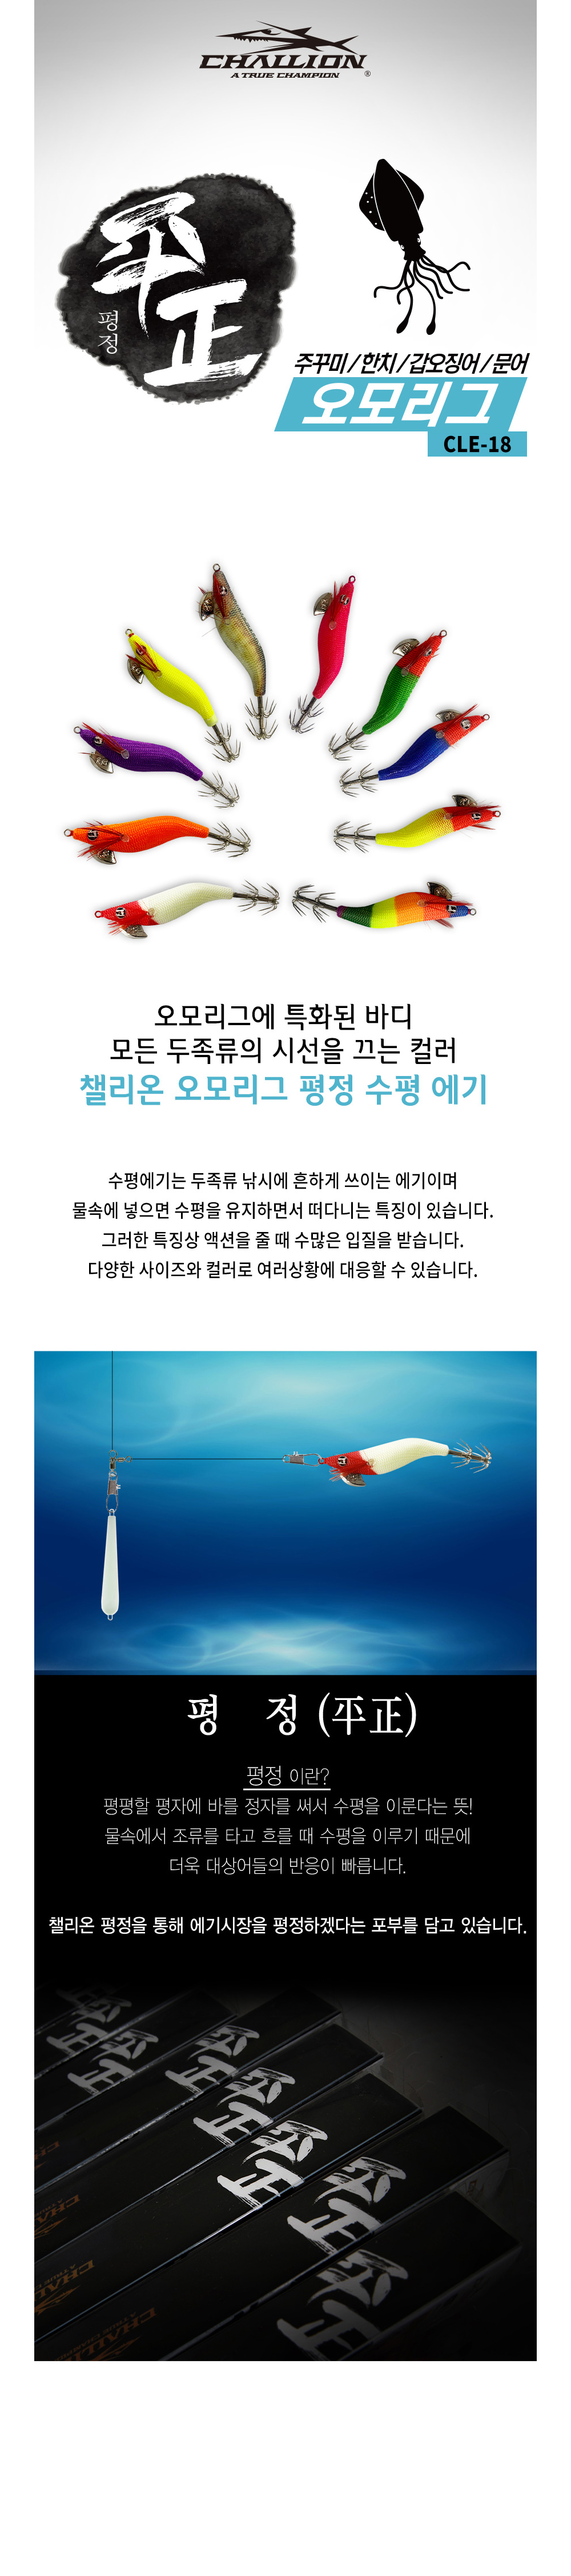 챌리온 CLE-18 오모리그에기 평정 2.2호 드로퍼